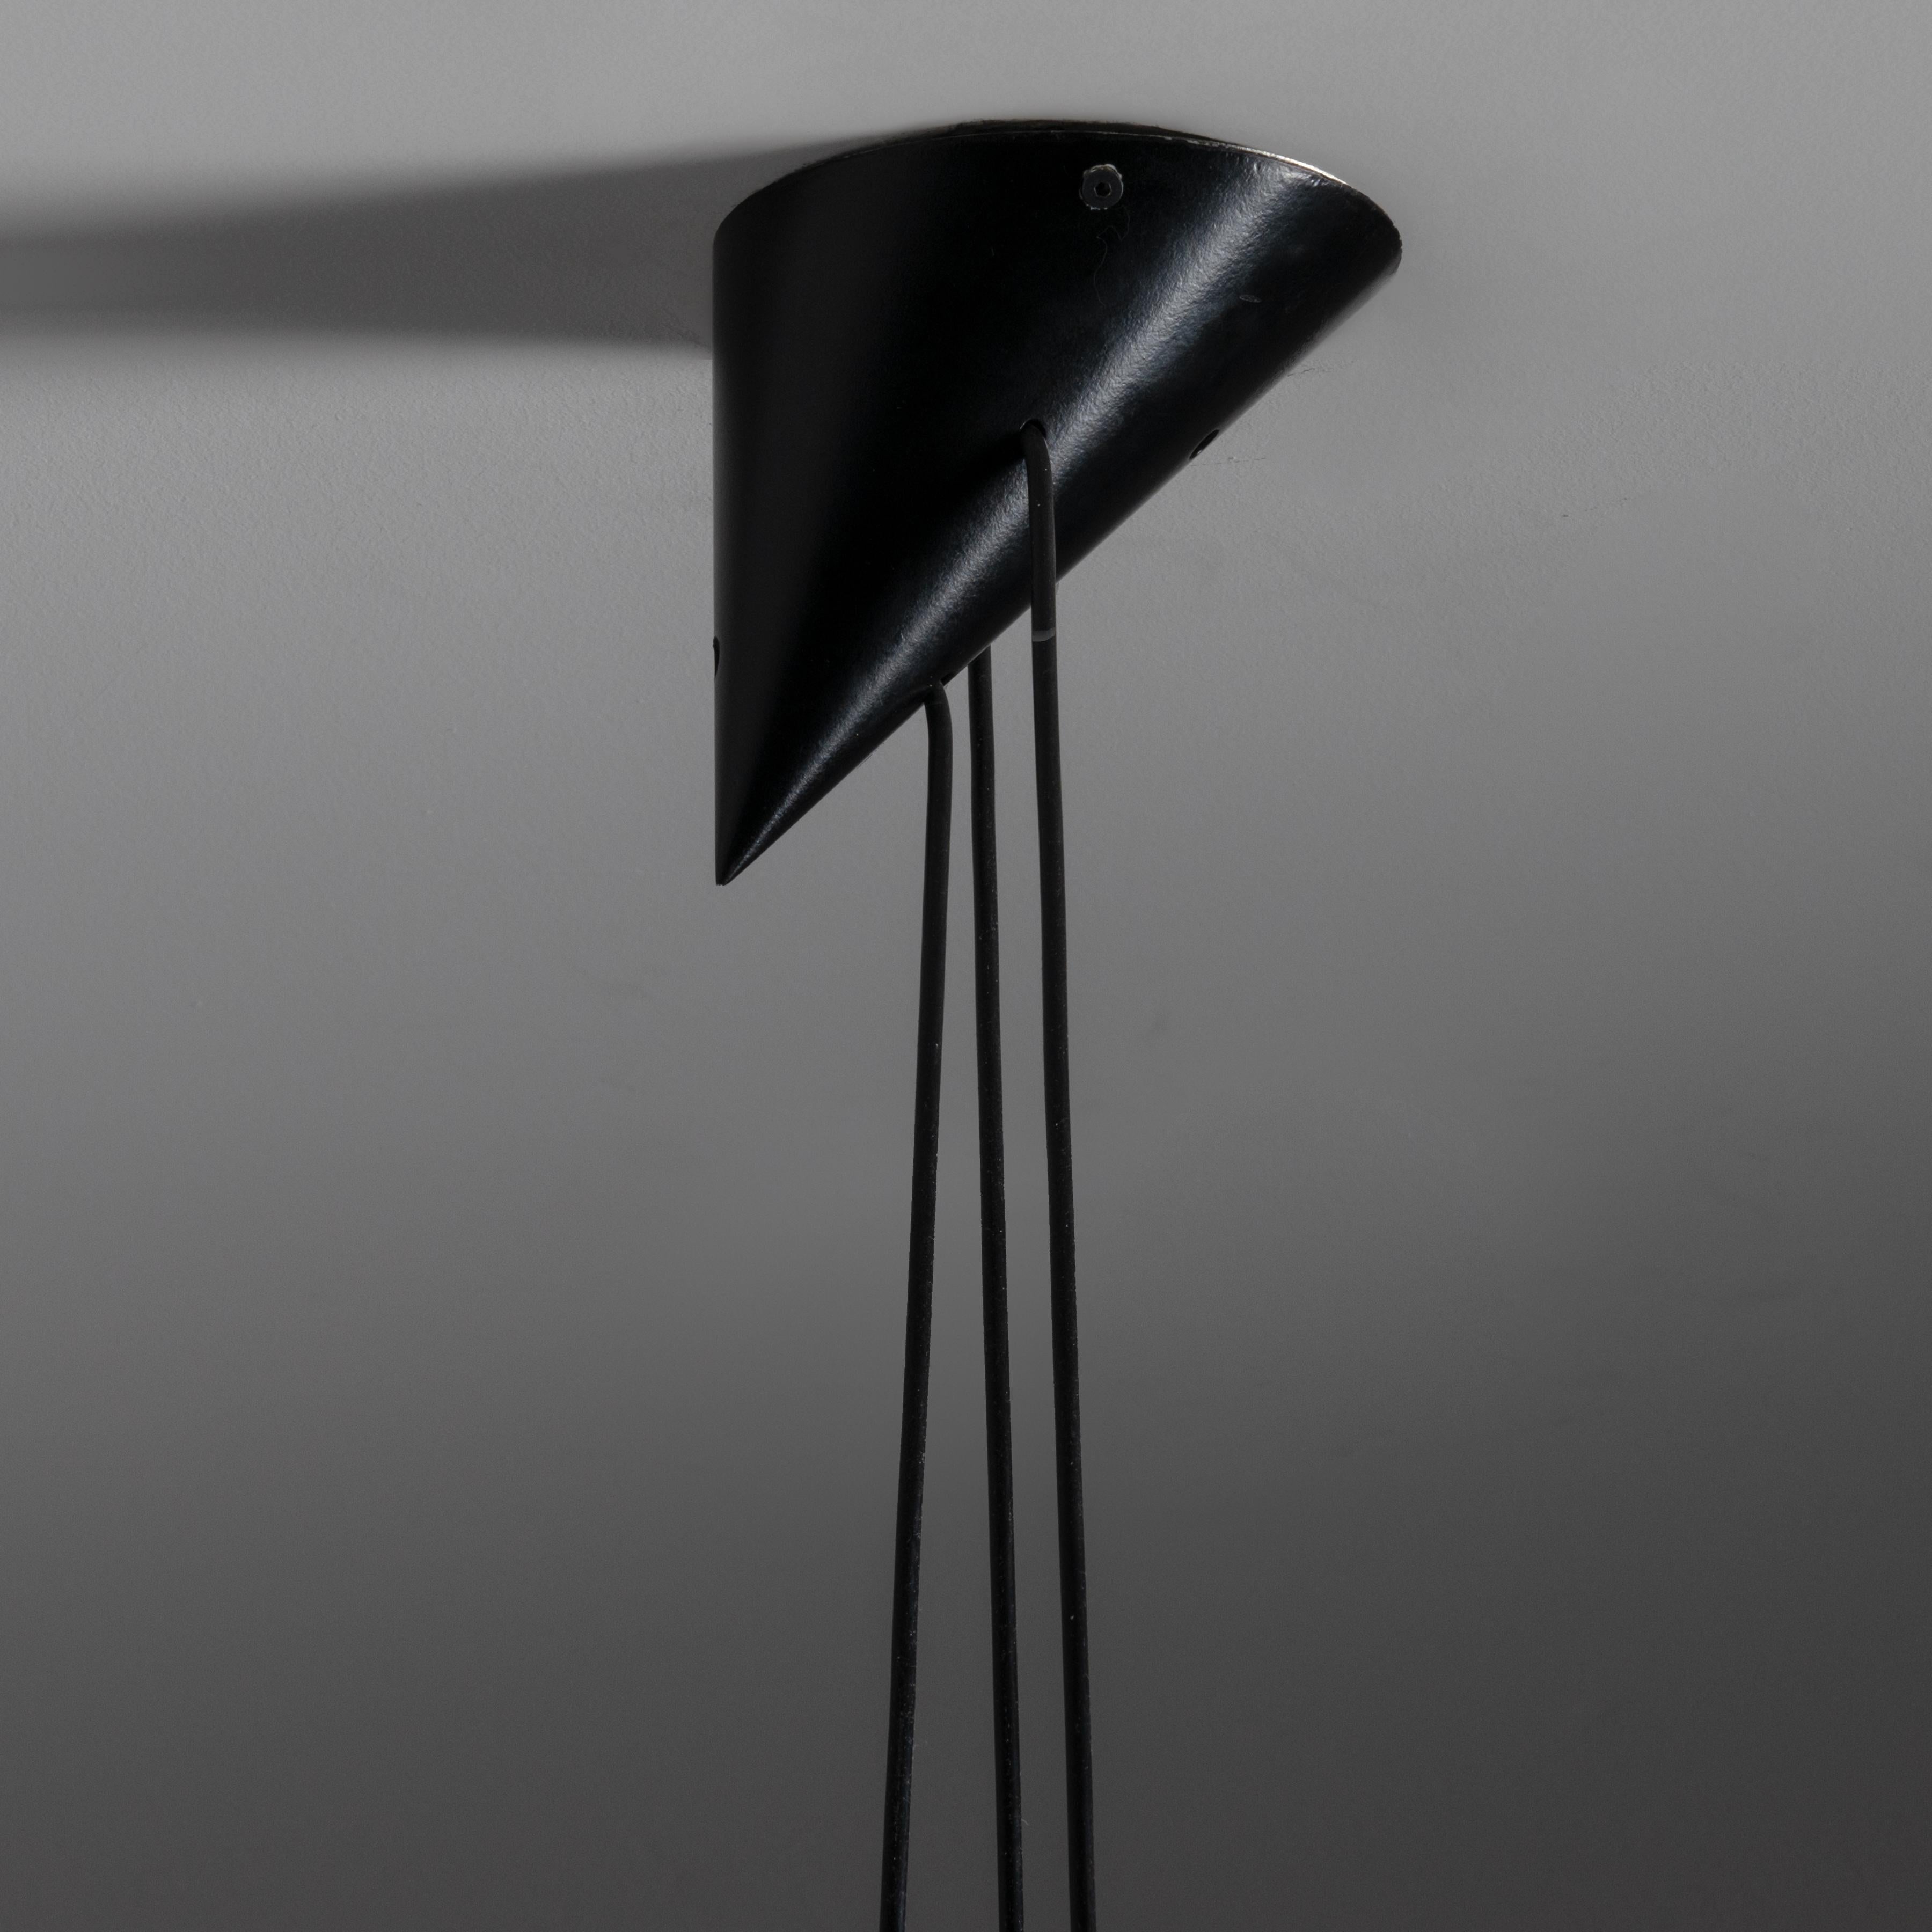 Modèle n°. 16519 'Bille Lamp' par Bent Bille pour Louis Poulsen. Conçu et fabriqué au Danemark, vers les années 1950. Abat-jour en aluminium laqué noir, de forme conique simple et élégante. L'auvent est une représentation fidèle de la forme de